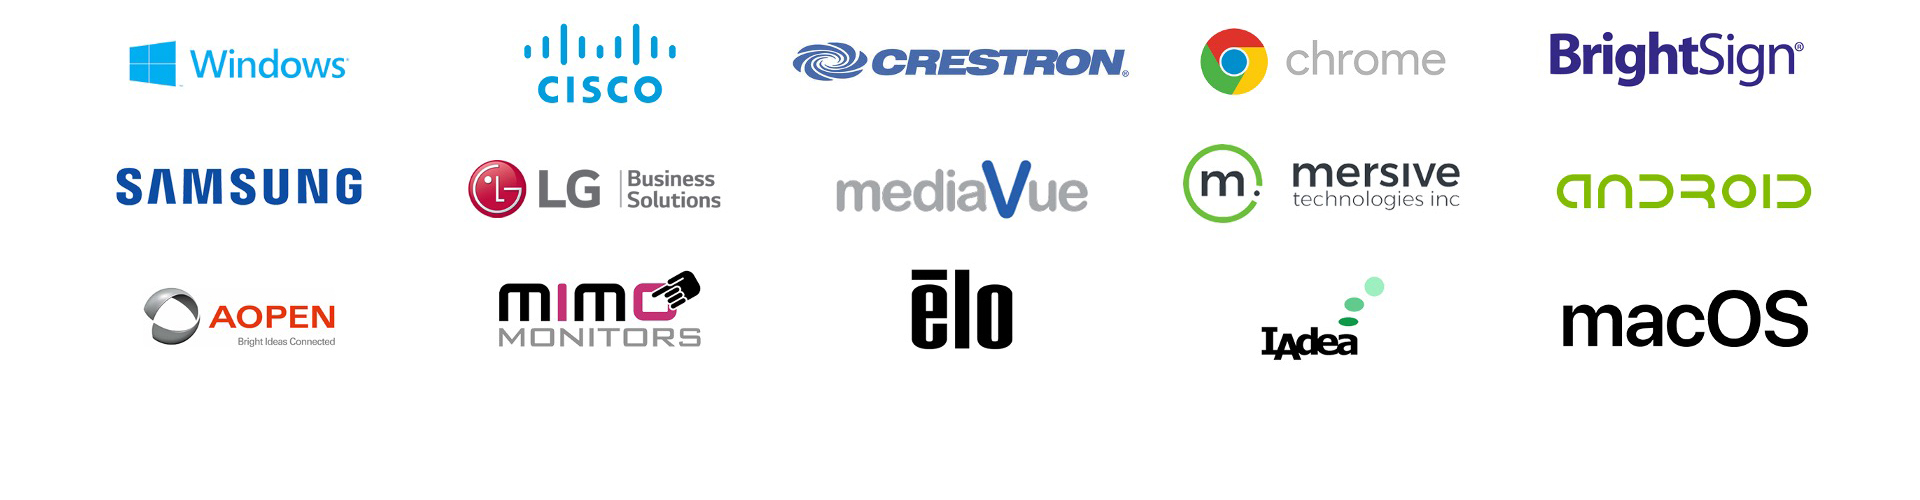 platforms-workplace-logos.jpg